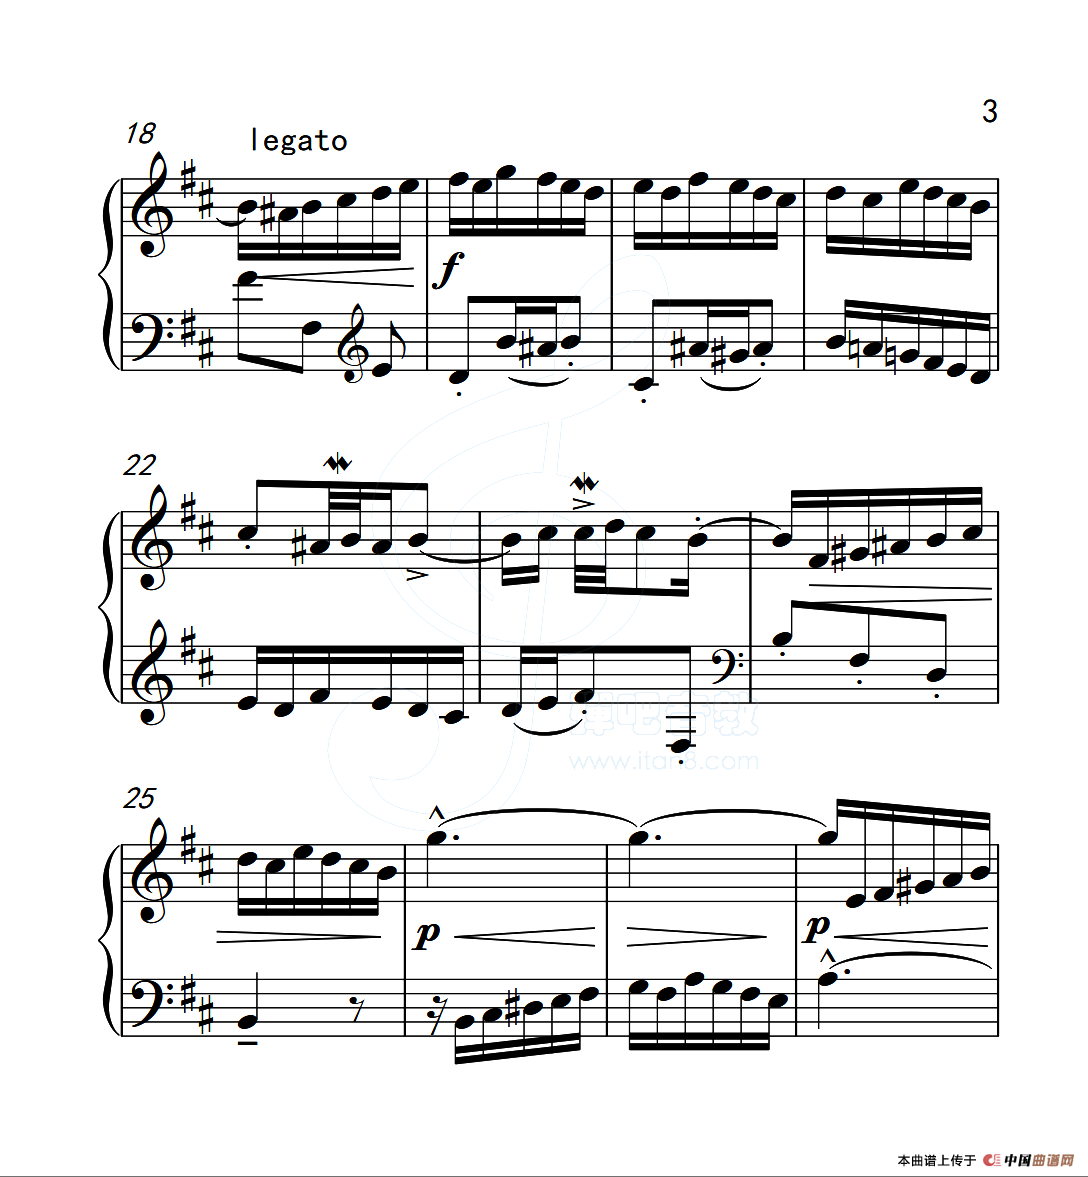 二部创意曲钢琴考级(钢琴考级5级二部创意曲)